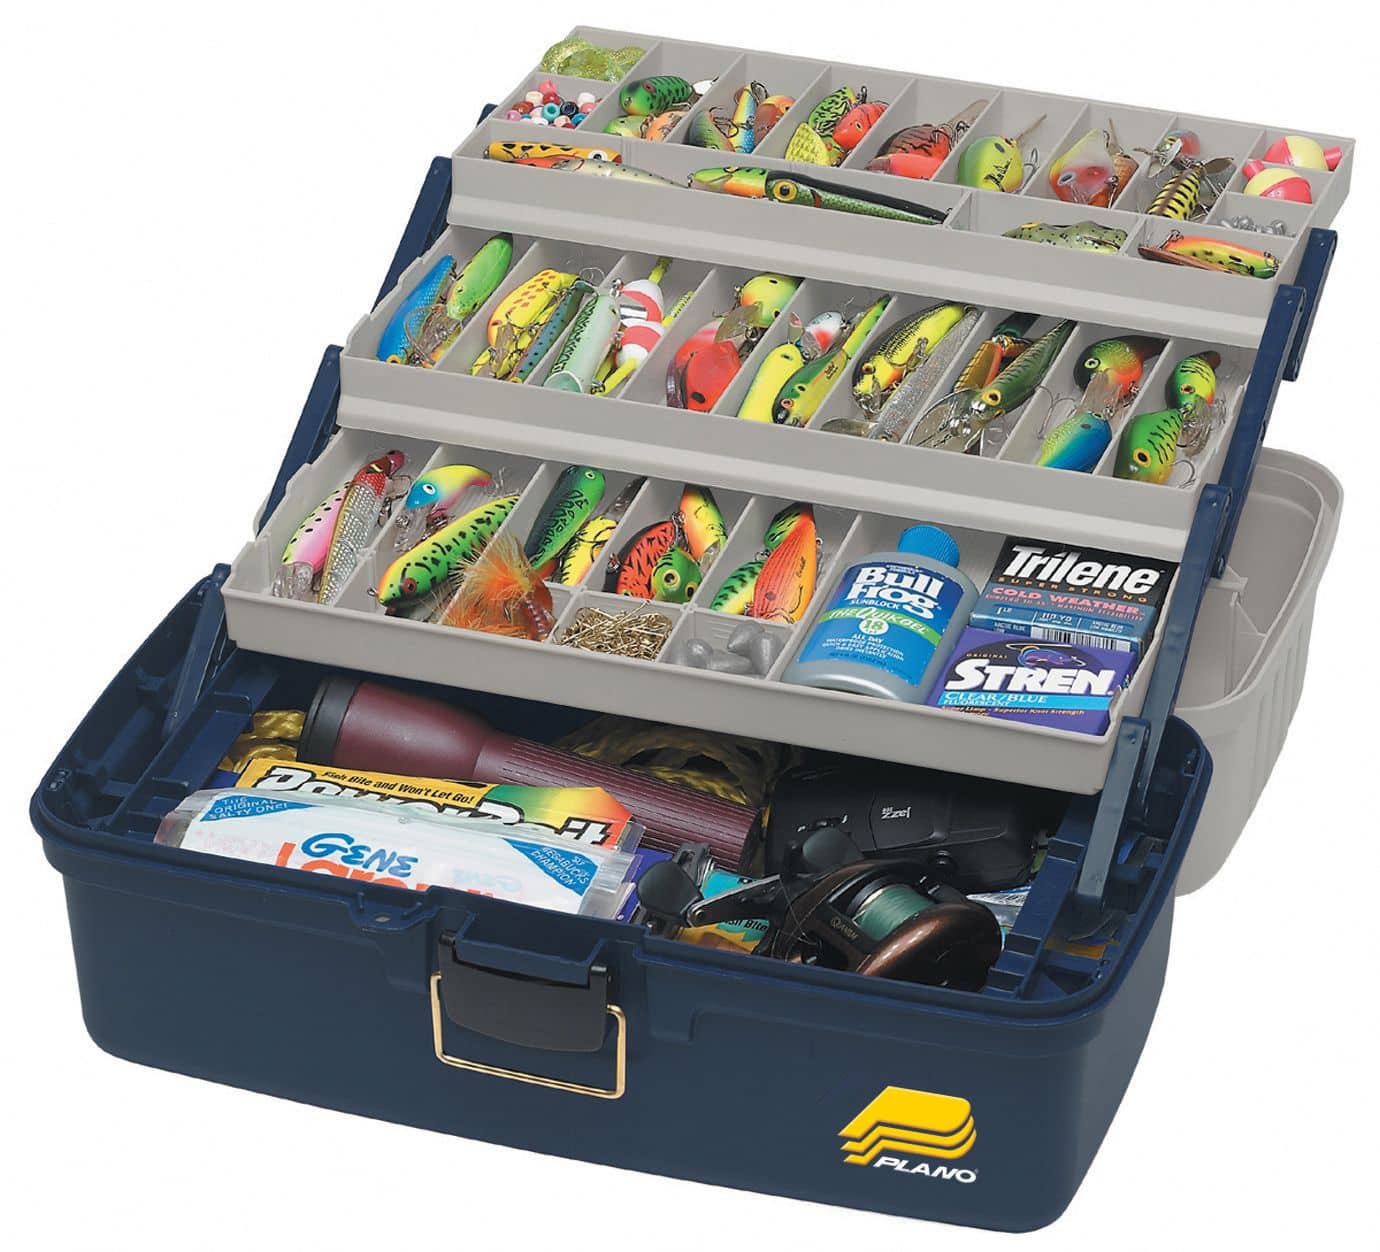 Marine Storage Case Marine Toolbox Fishing Equipment Organizer